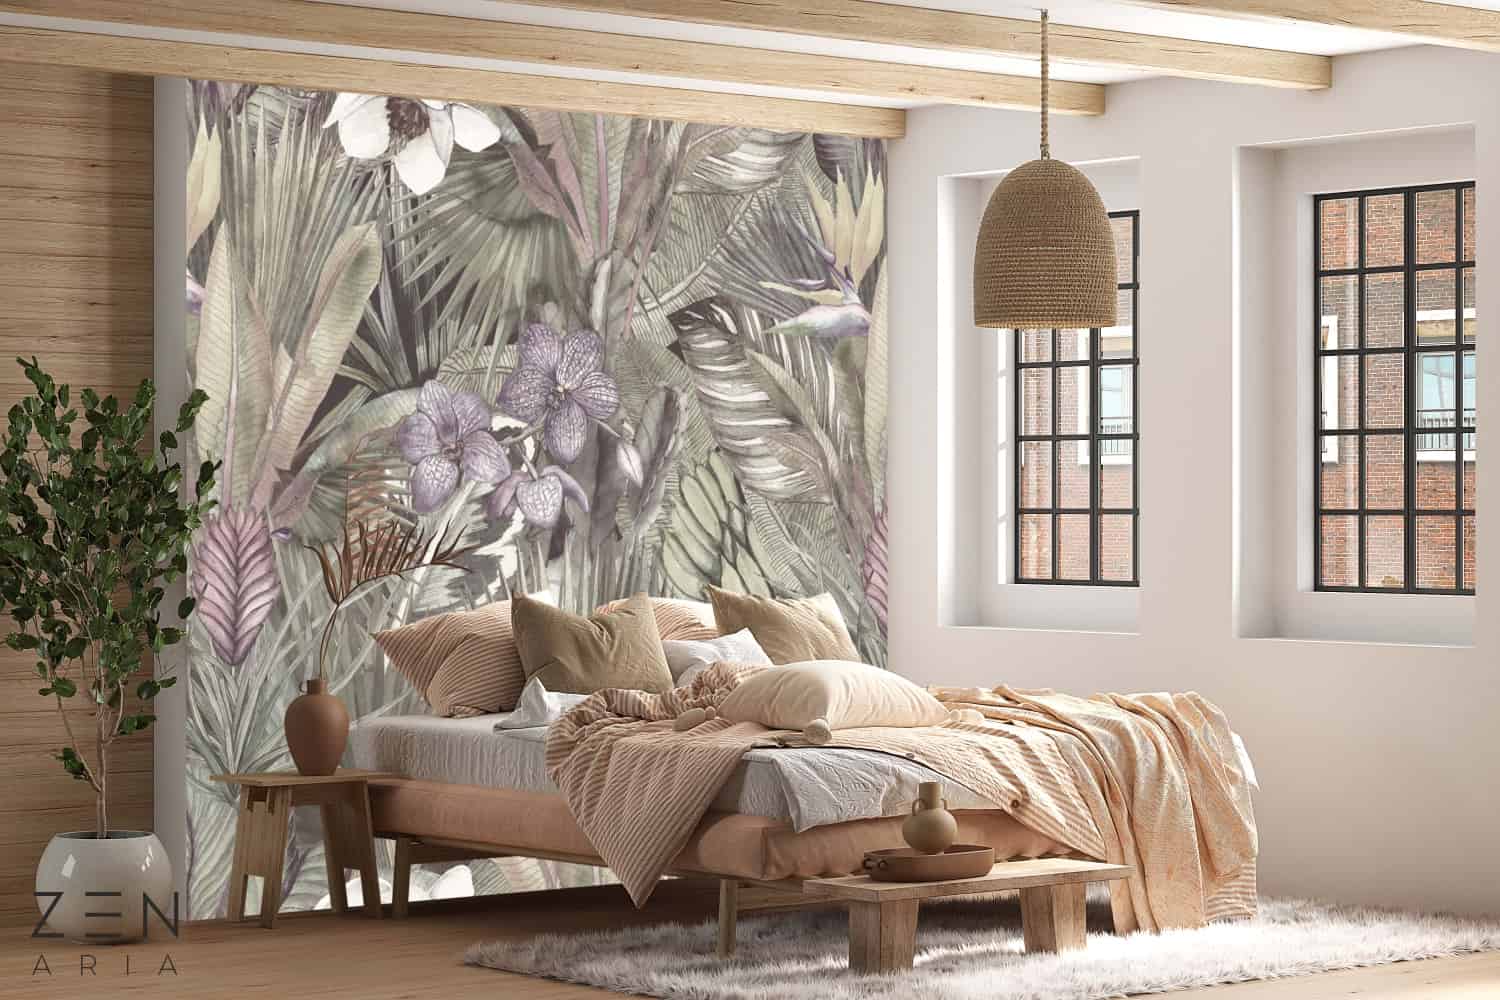 2. Modele de tapet pentru dormitor - recomandări de tapet în funcție de dimensiunile și stilul dormitorului - Tapet Japan Mystic Garden Verde, model de tapet cu lotus și flori (2)